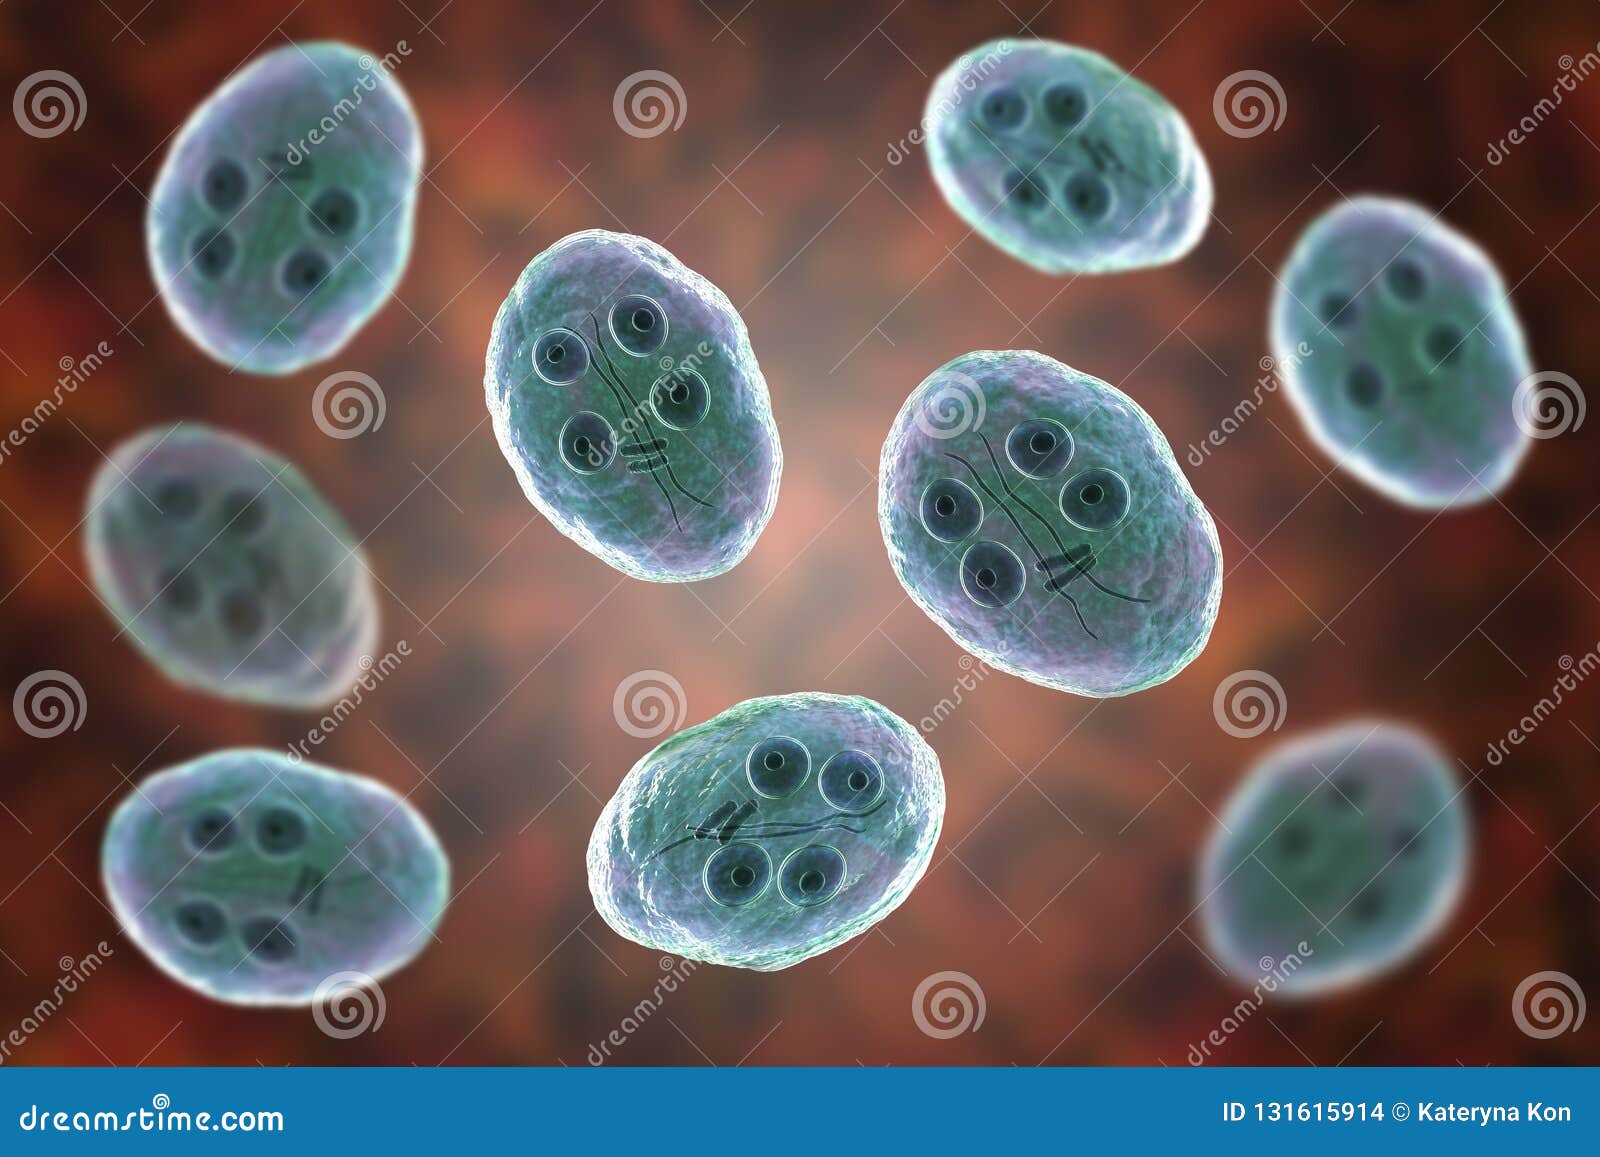 bacterii giardia lambia